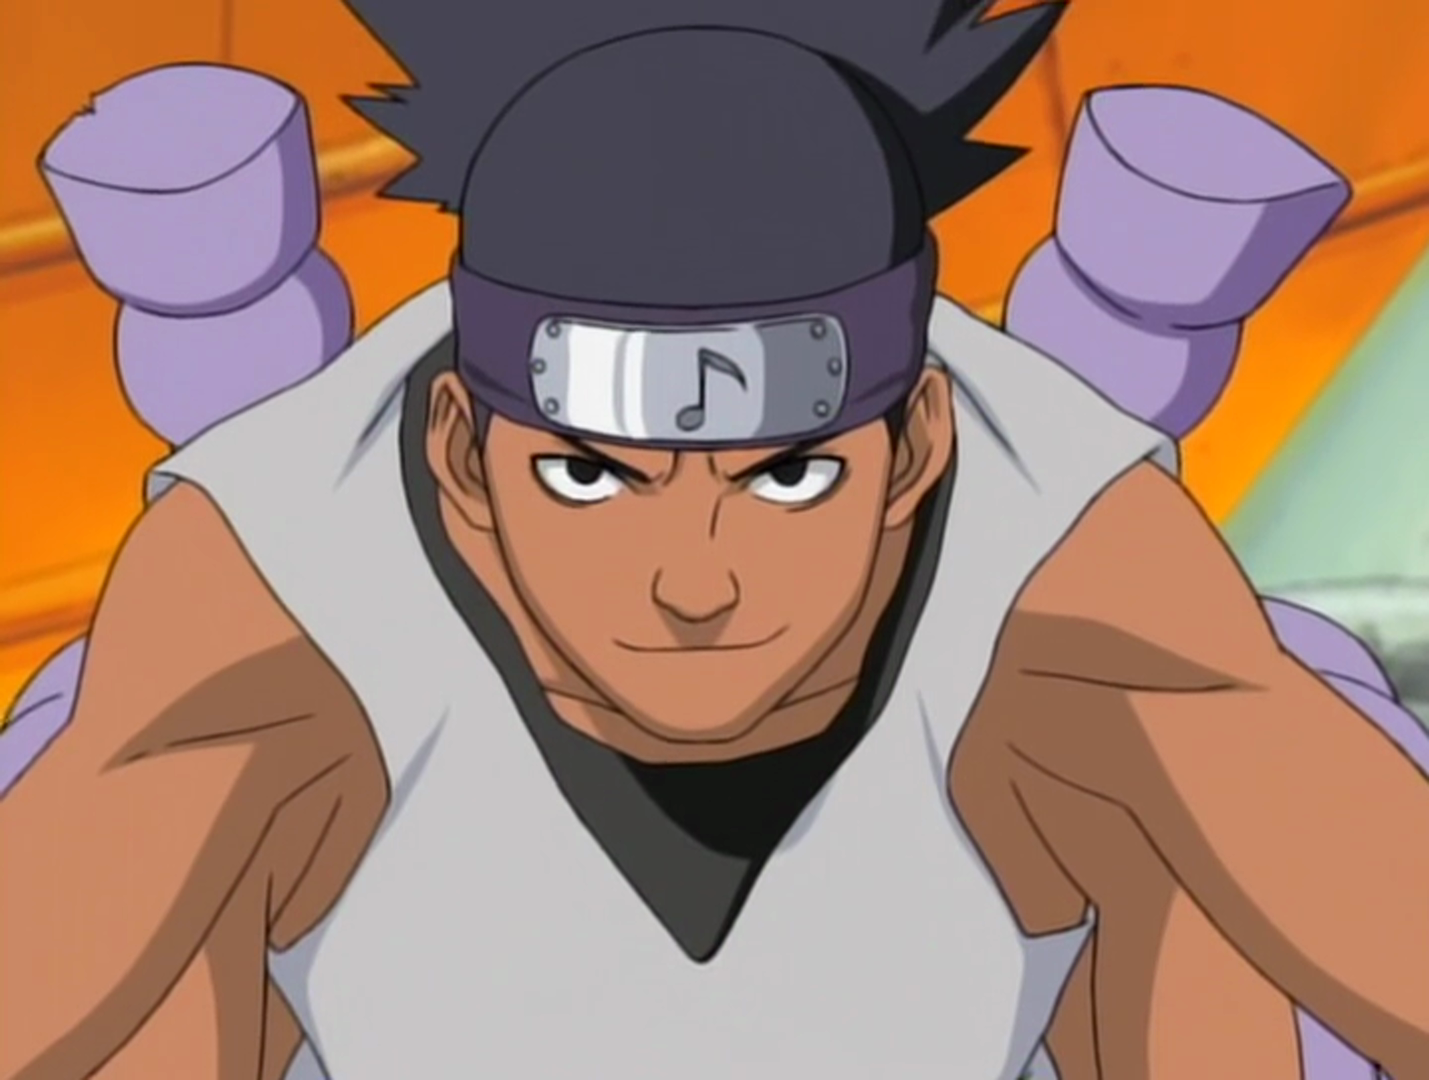 Naruto: Shippuden (season 6) - Wikipedia